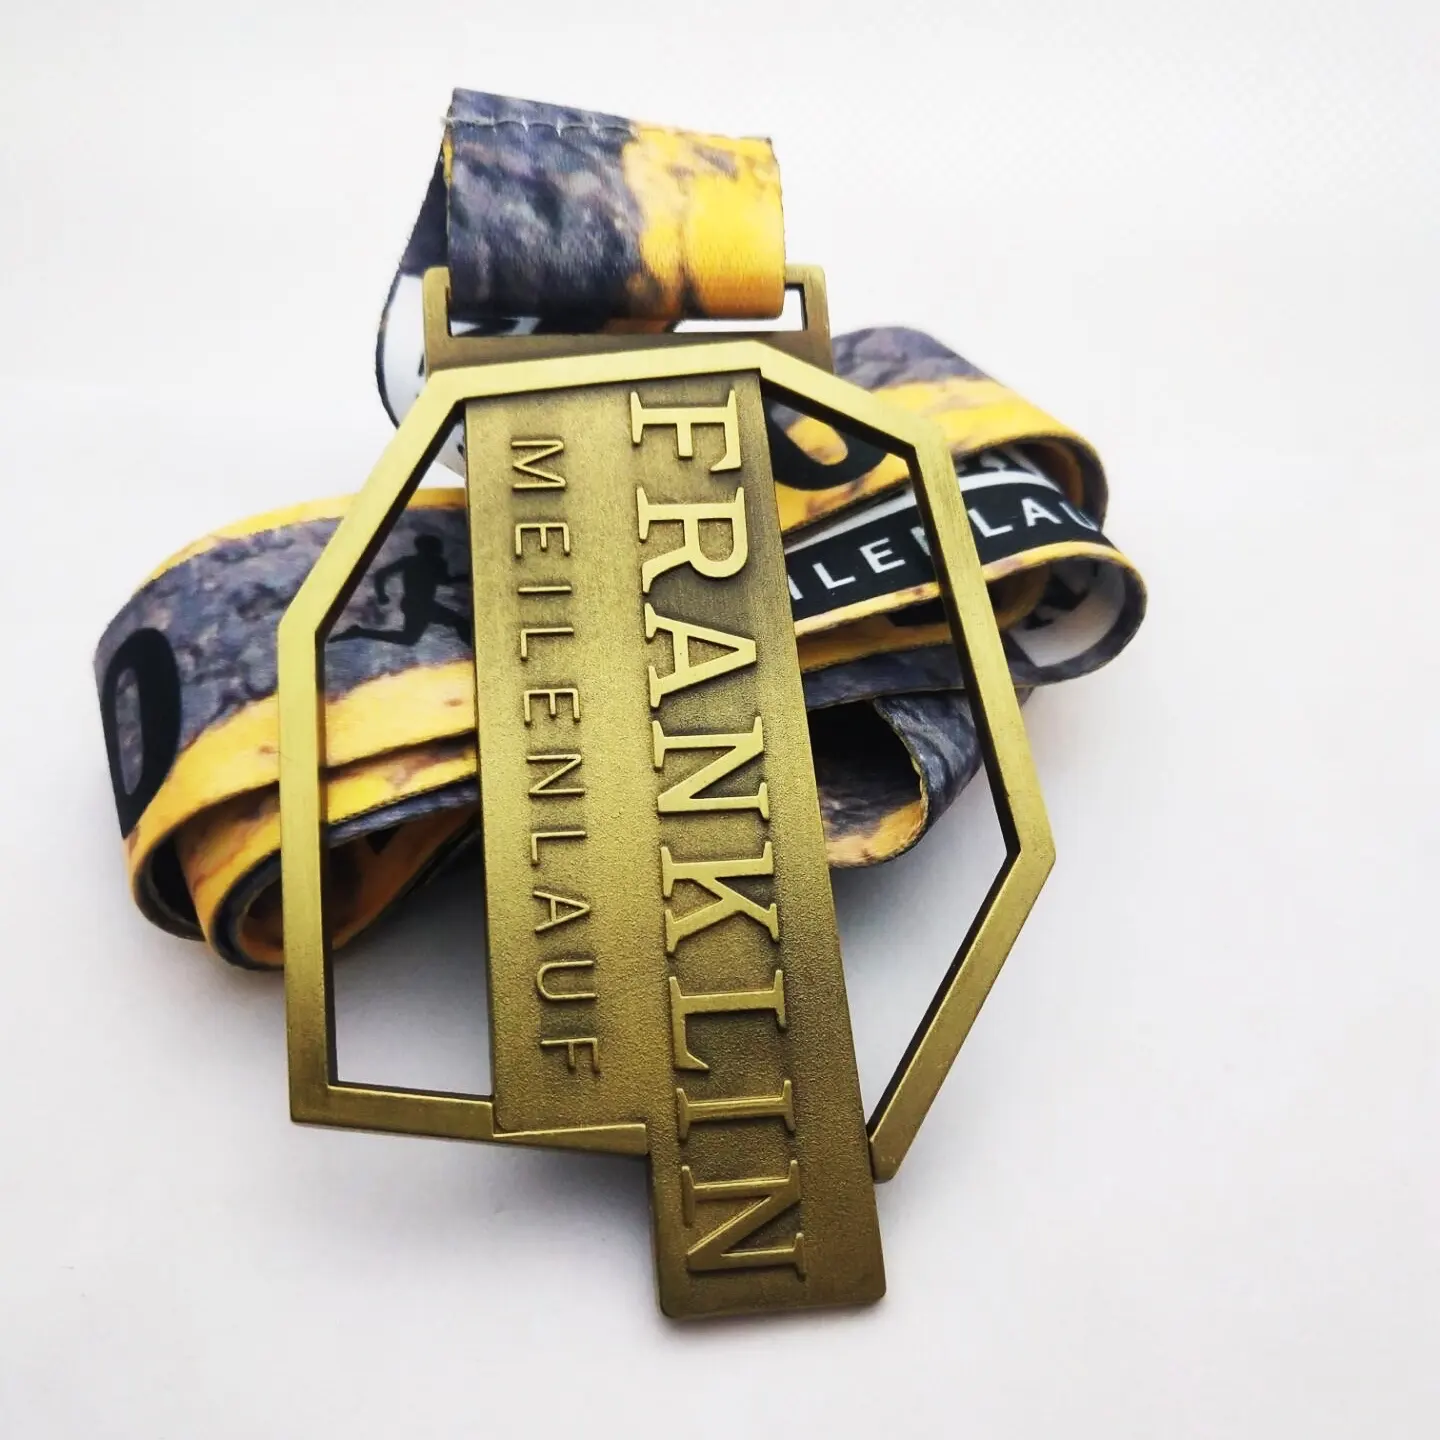 カスタムメダルメーカー亜鉛合金ダイキャストアンティークゴールドメダル3D刻印ロイヤルメダル